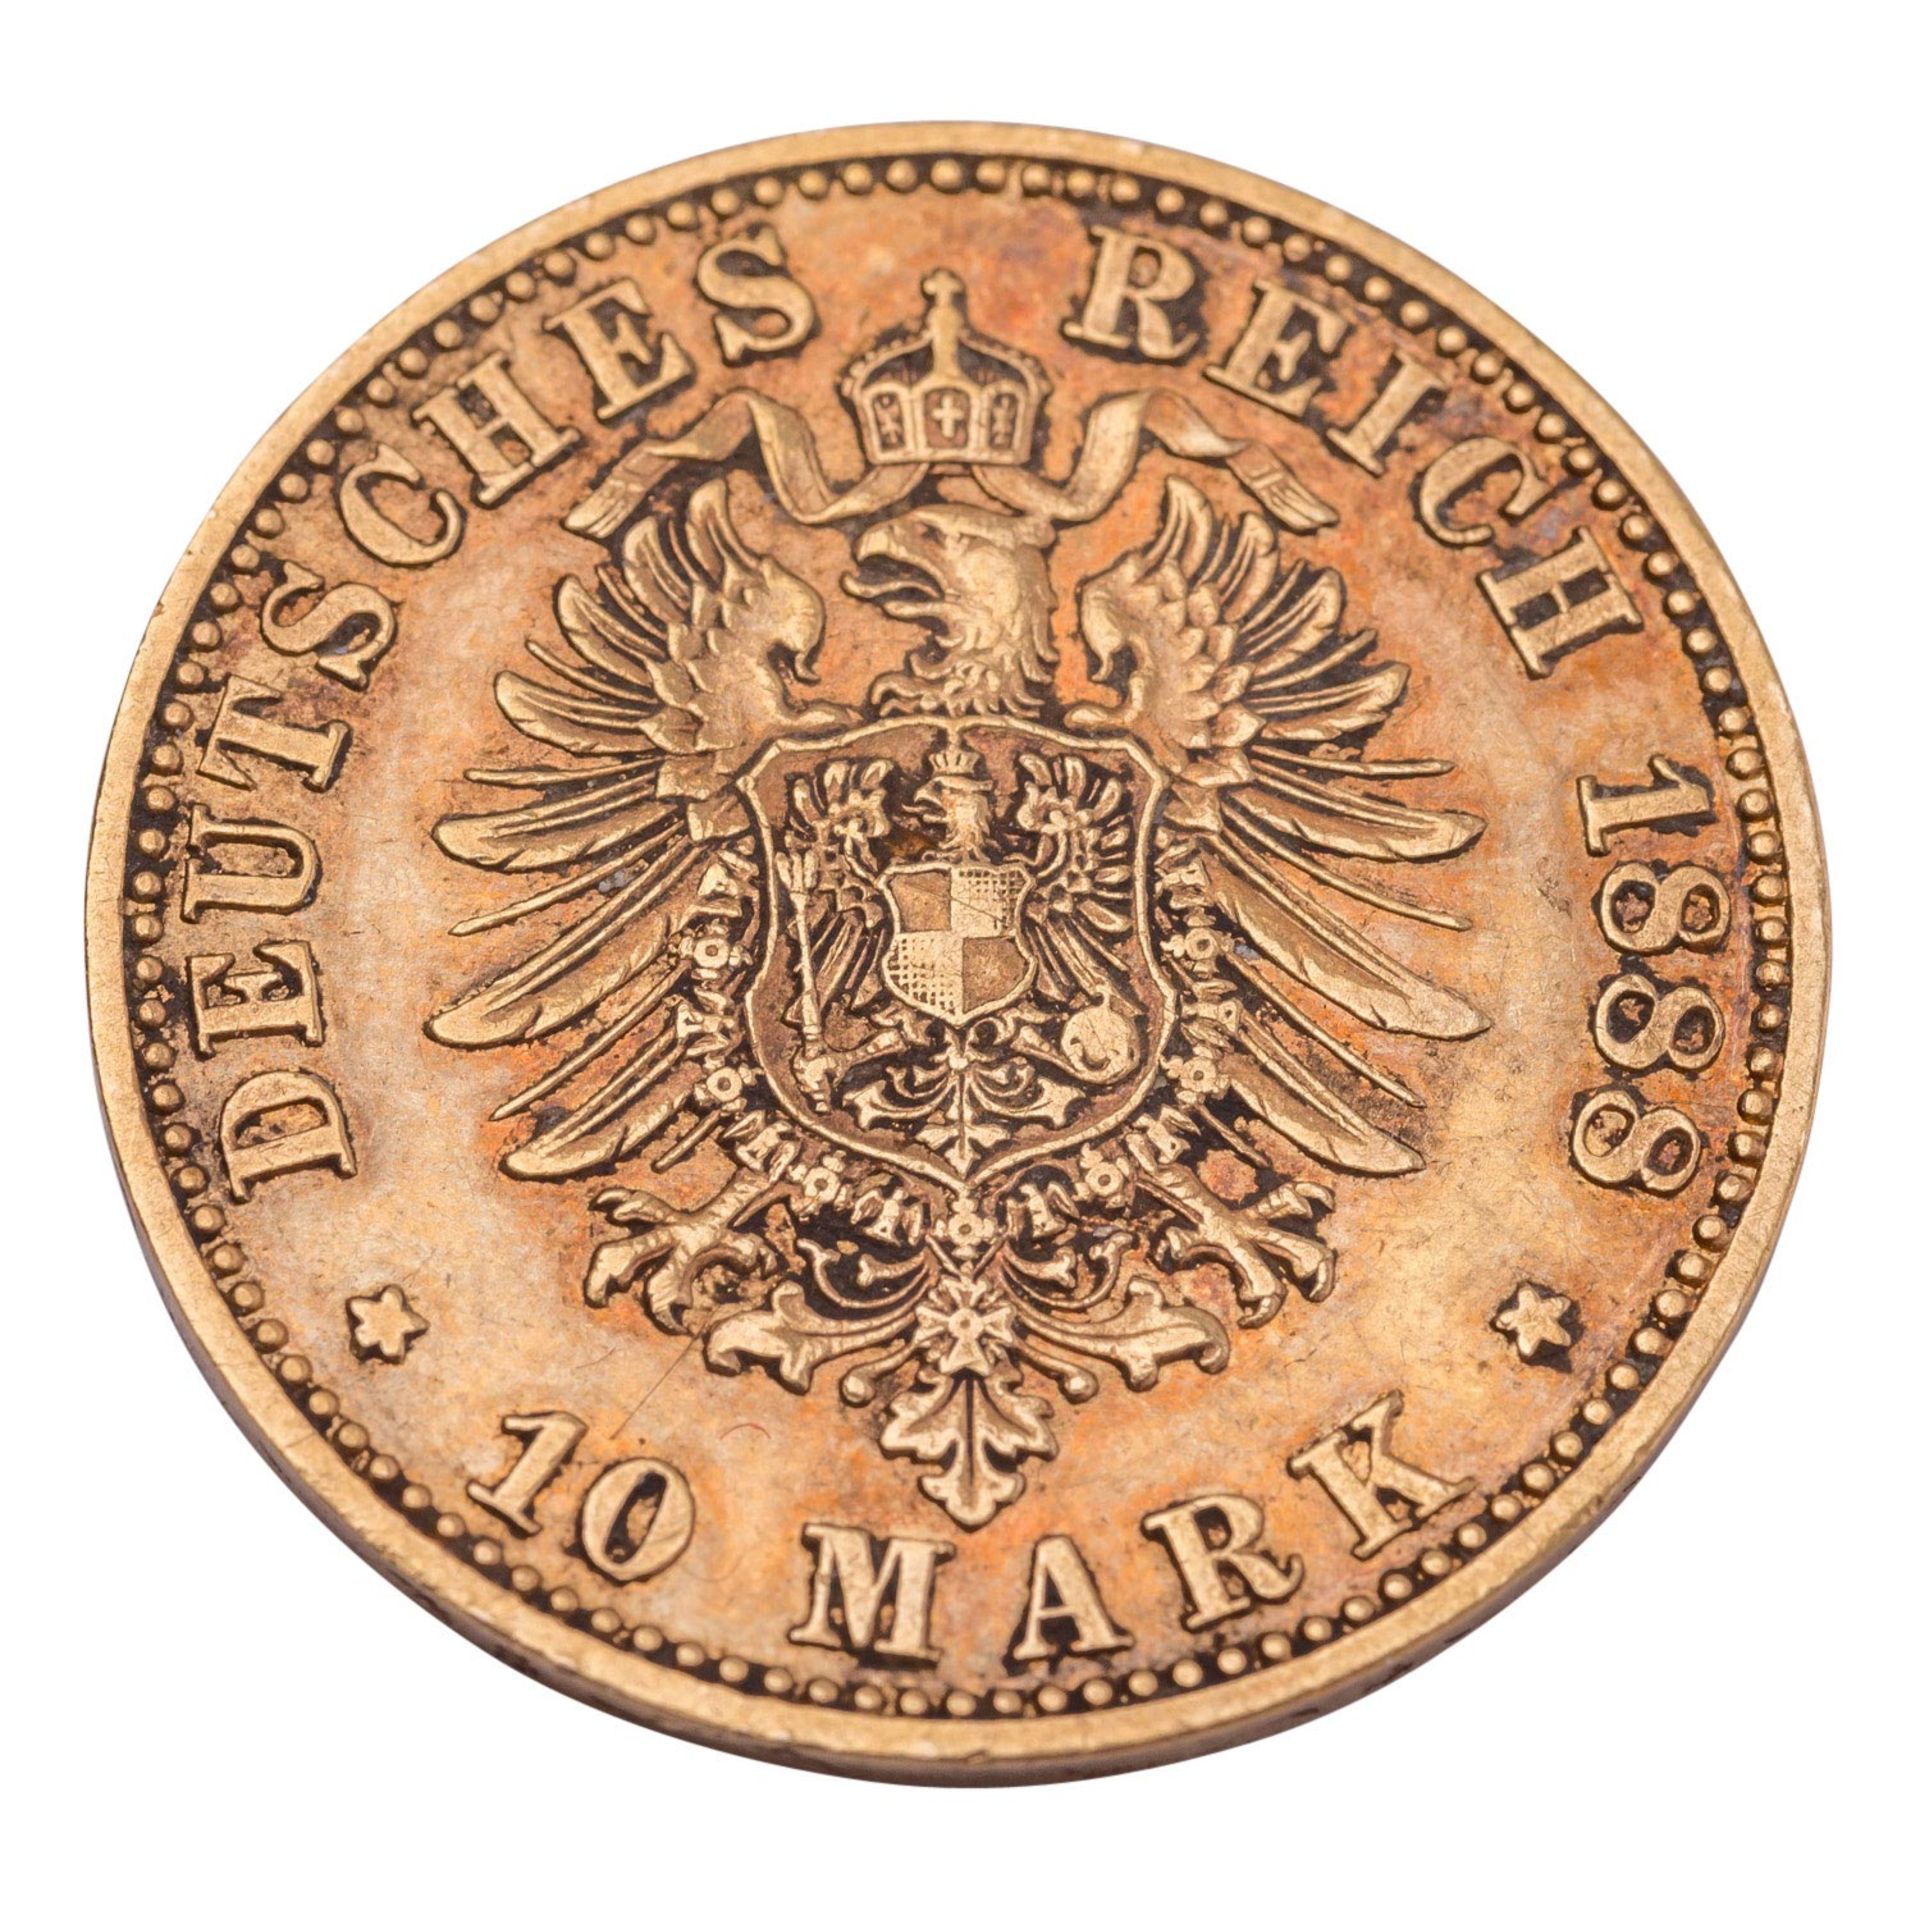 Deutsches Kaiserreich/Preußen - 10 Mark 1888/A, Kaiser Friedrich, GOLD, - Image 2 of 2